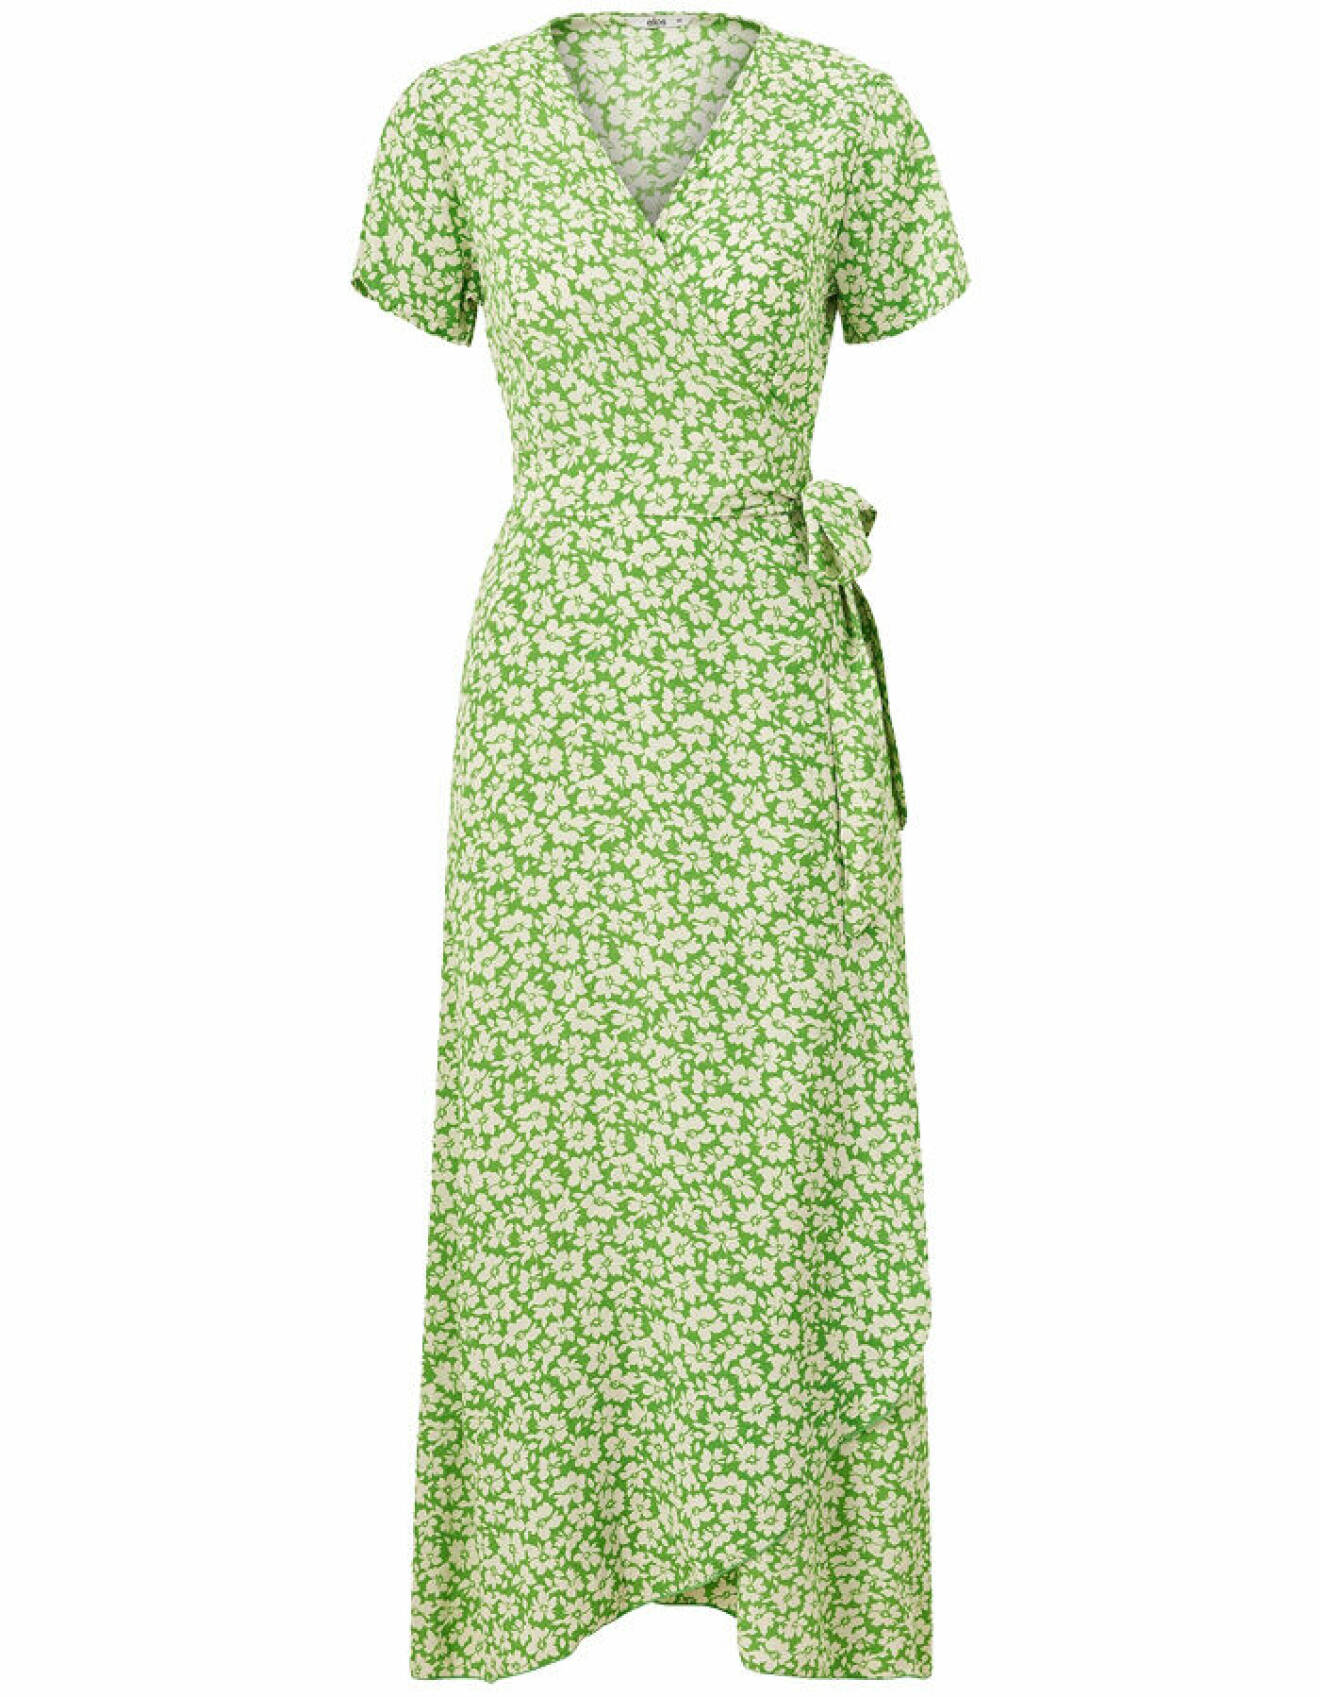 blommig klänning i grönt med omlott och kort ärm från ellos som passar vårperson